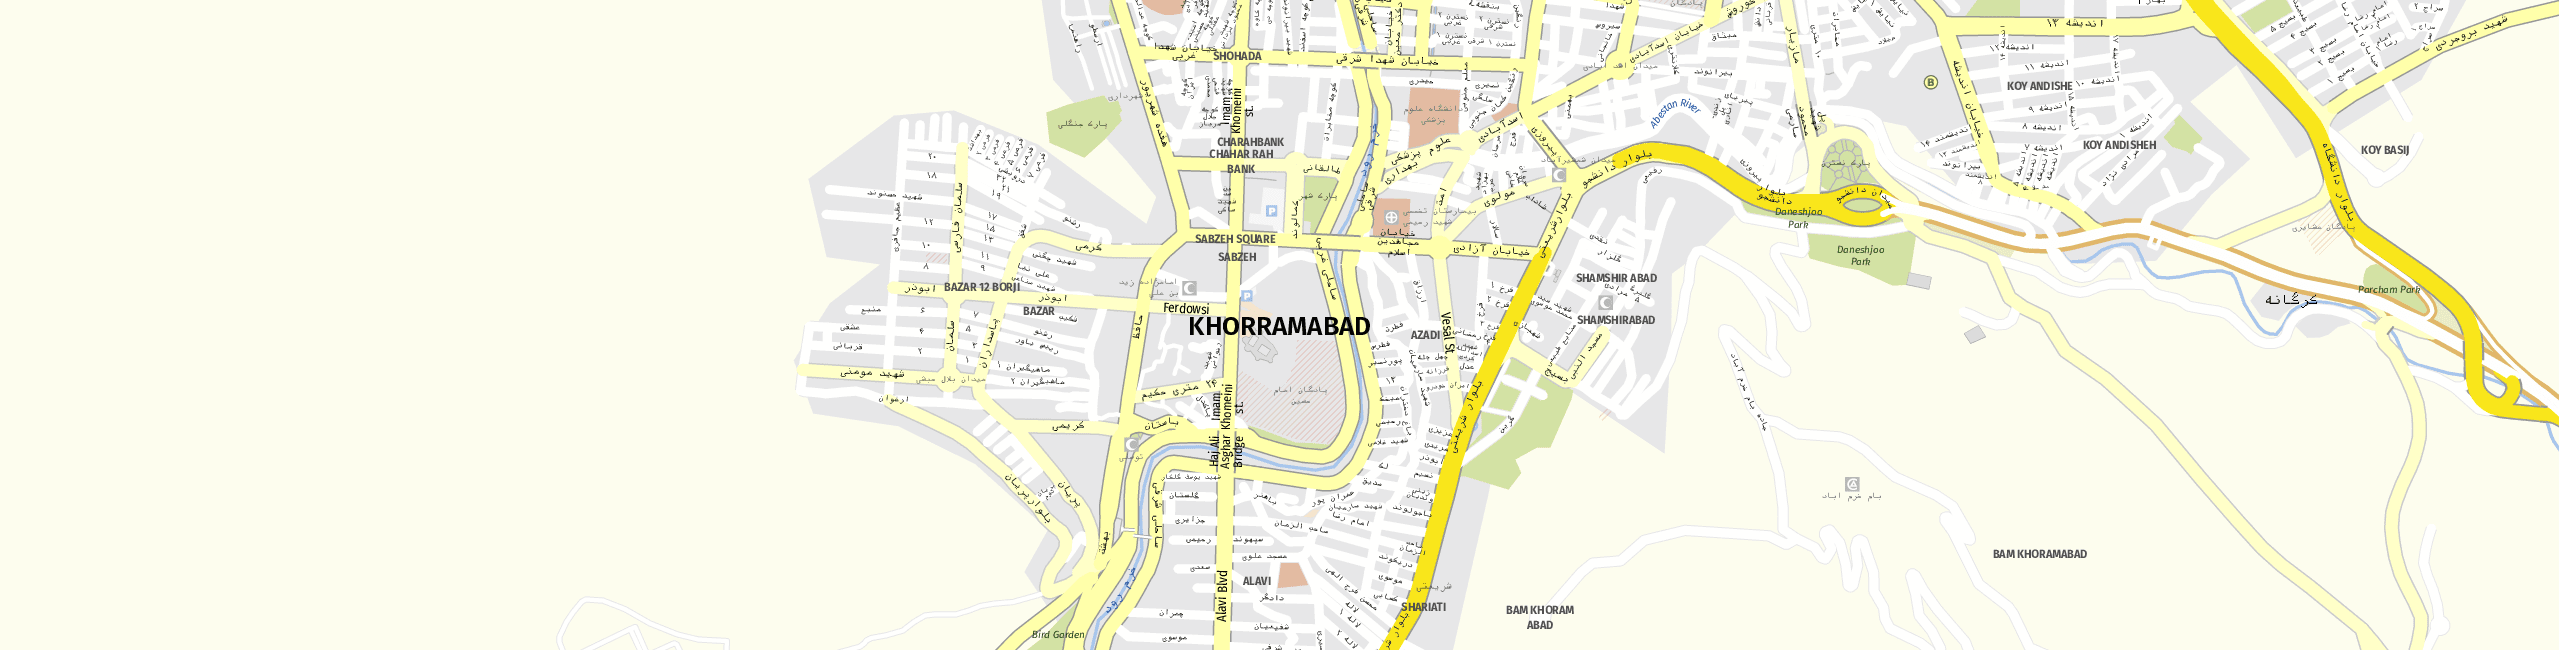 Stadtplan Khorramabad zum Downloaden.